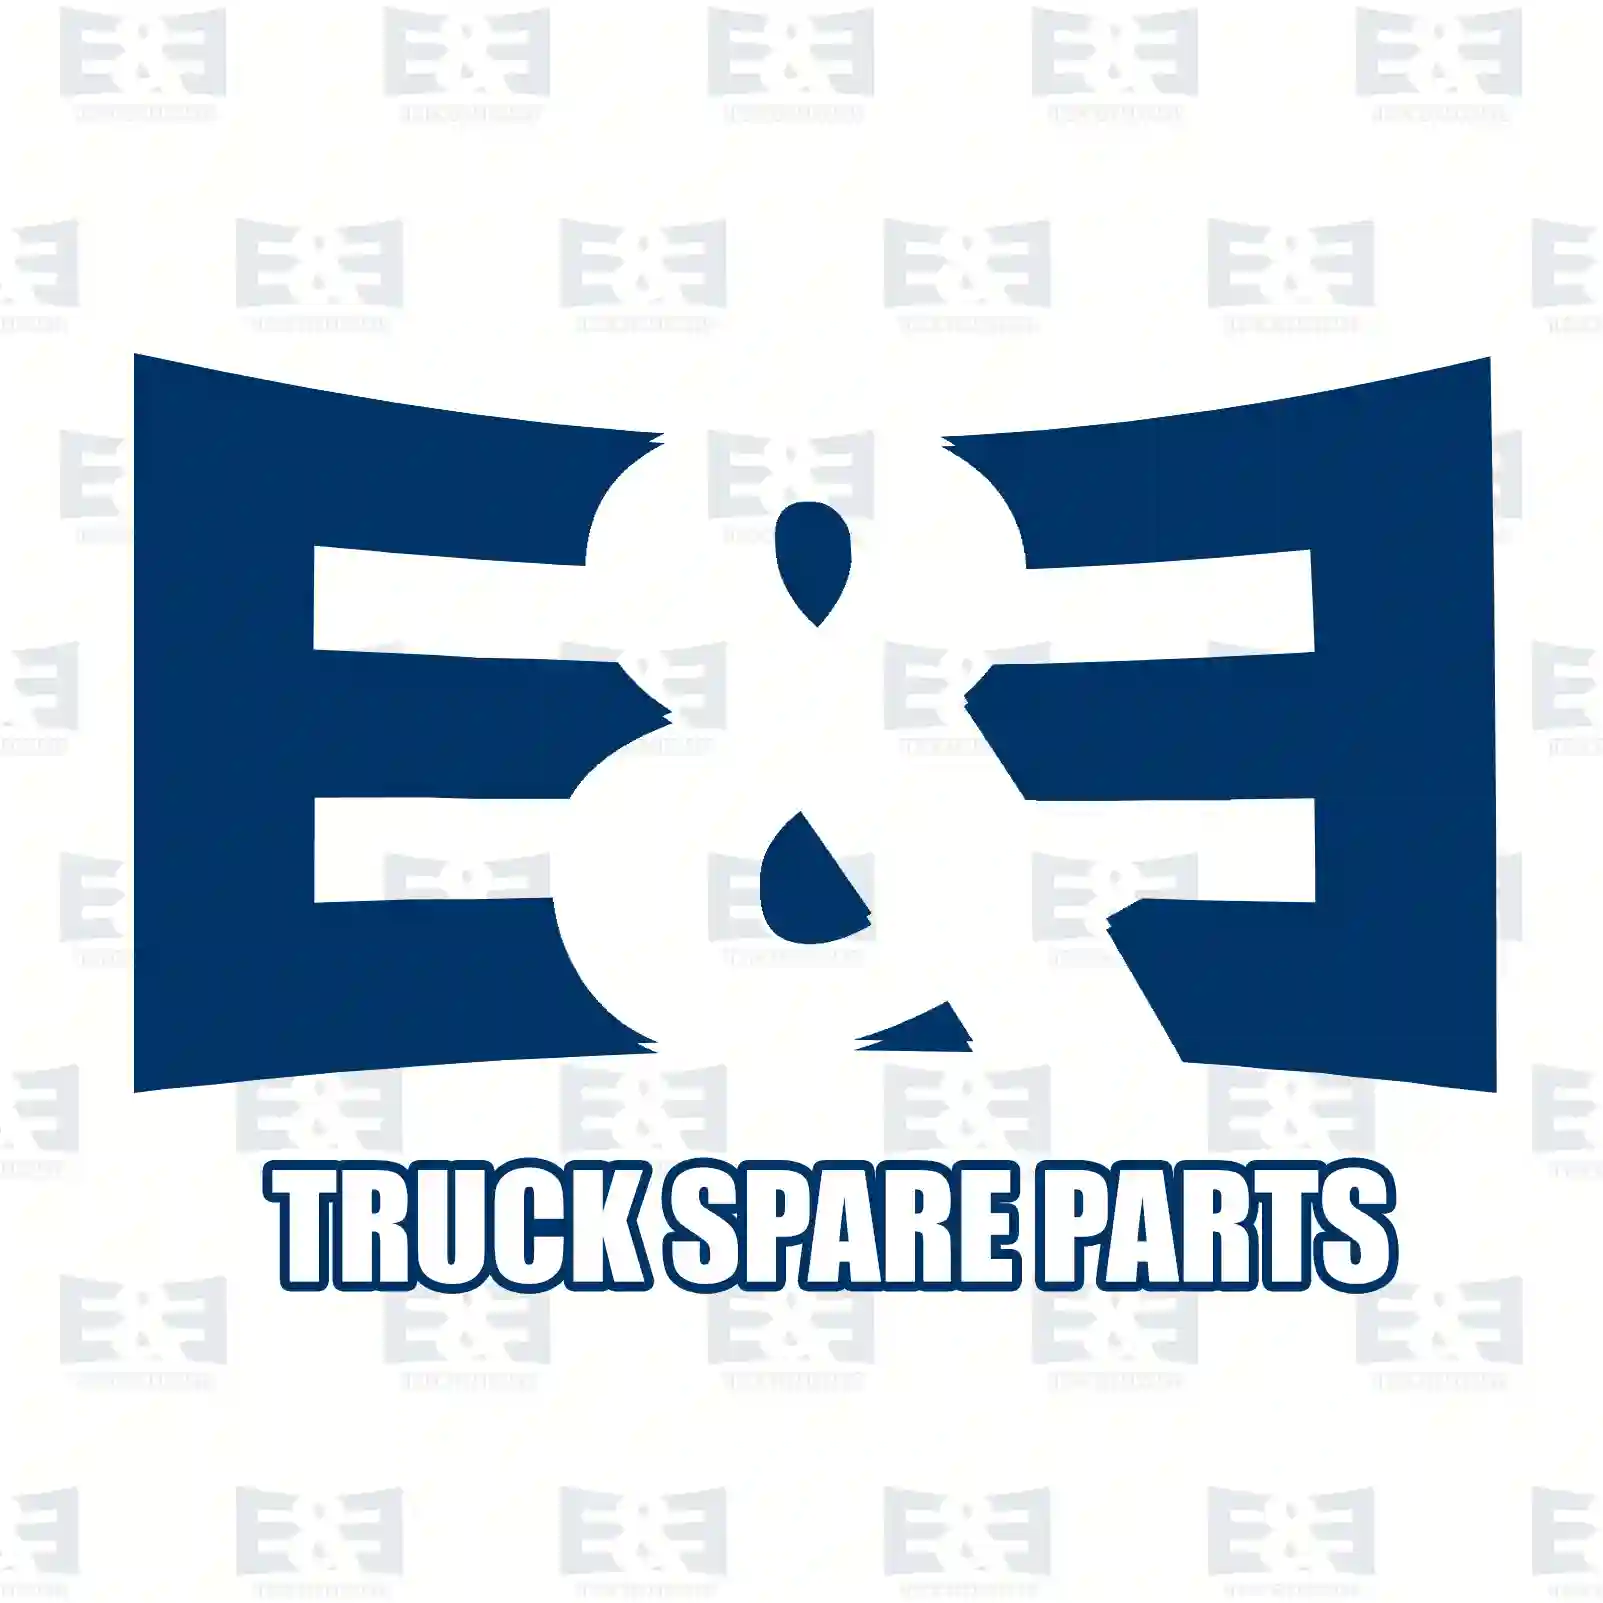 Ball joint, 2E2277845, 1330987 ||  2E2277845 E&E Truck Spare Parts | Truck Spare Parts, Auotomotive Spare Parts Ball joint, 2E2277845, 1330987 ||  2E2277845 E&E Truck Spare Parts | Truck Spare Parts, Auotomotive Spare Parts